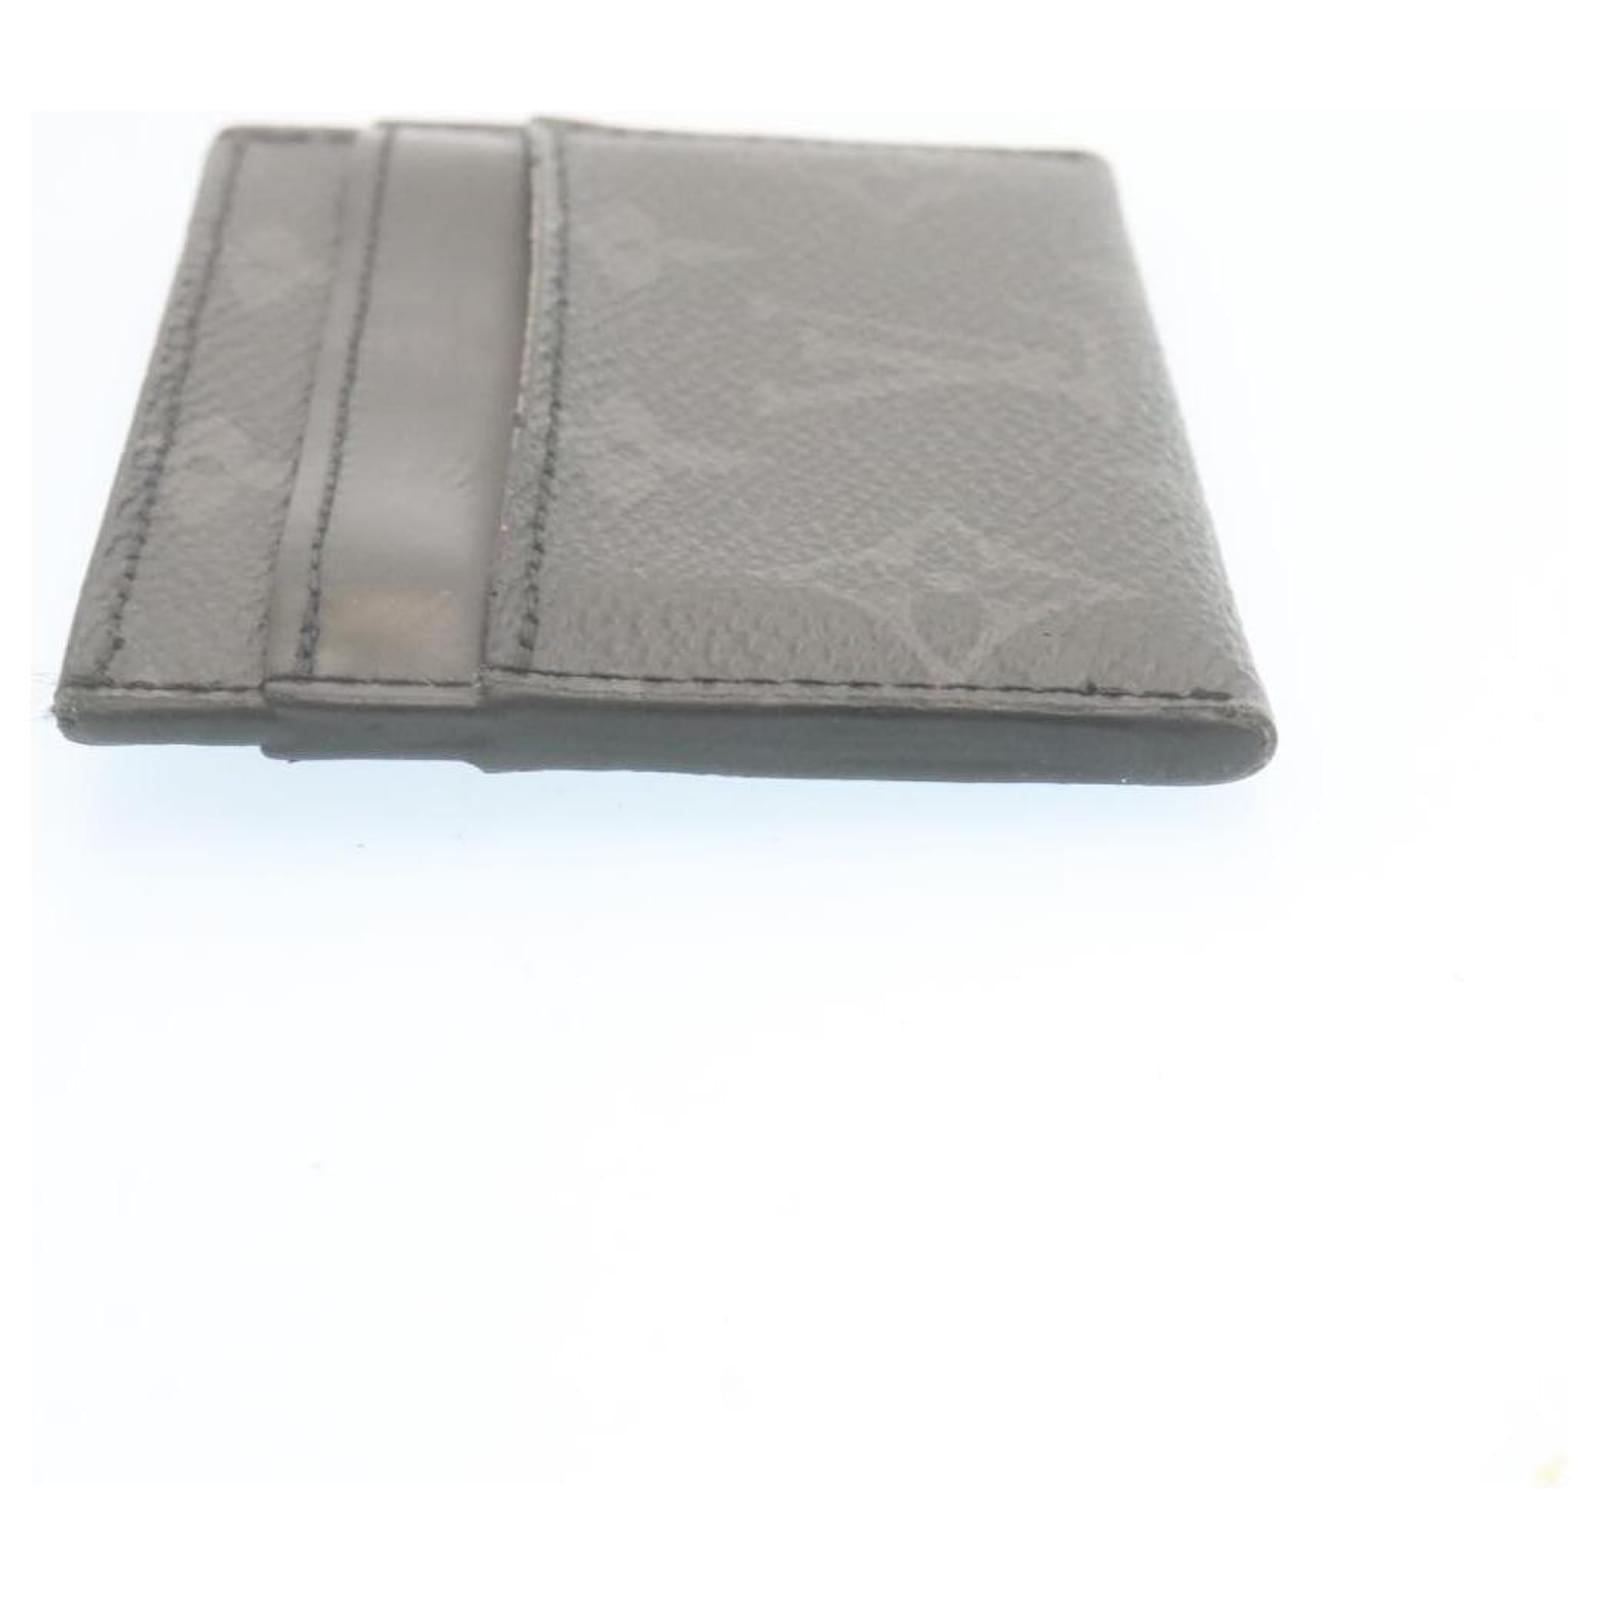 Louis Vuitton Monogram Eclipse Porte-Cartes Double Card Holder